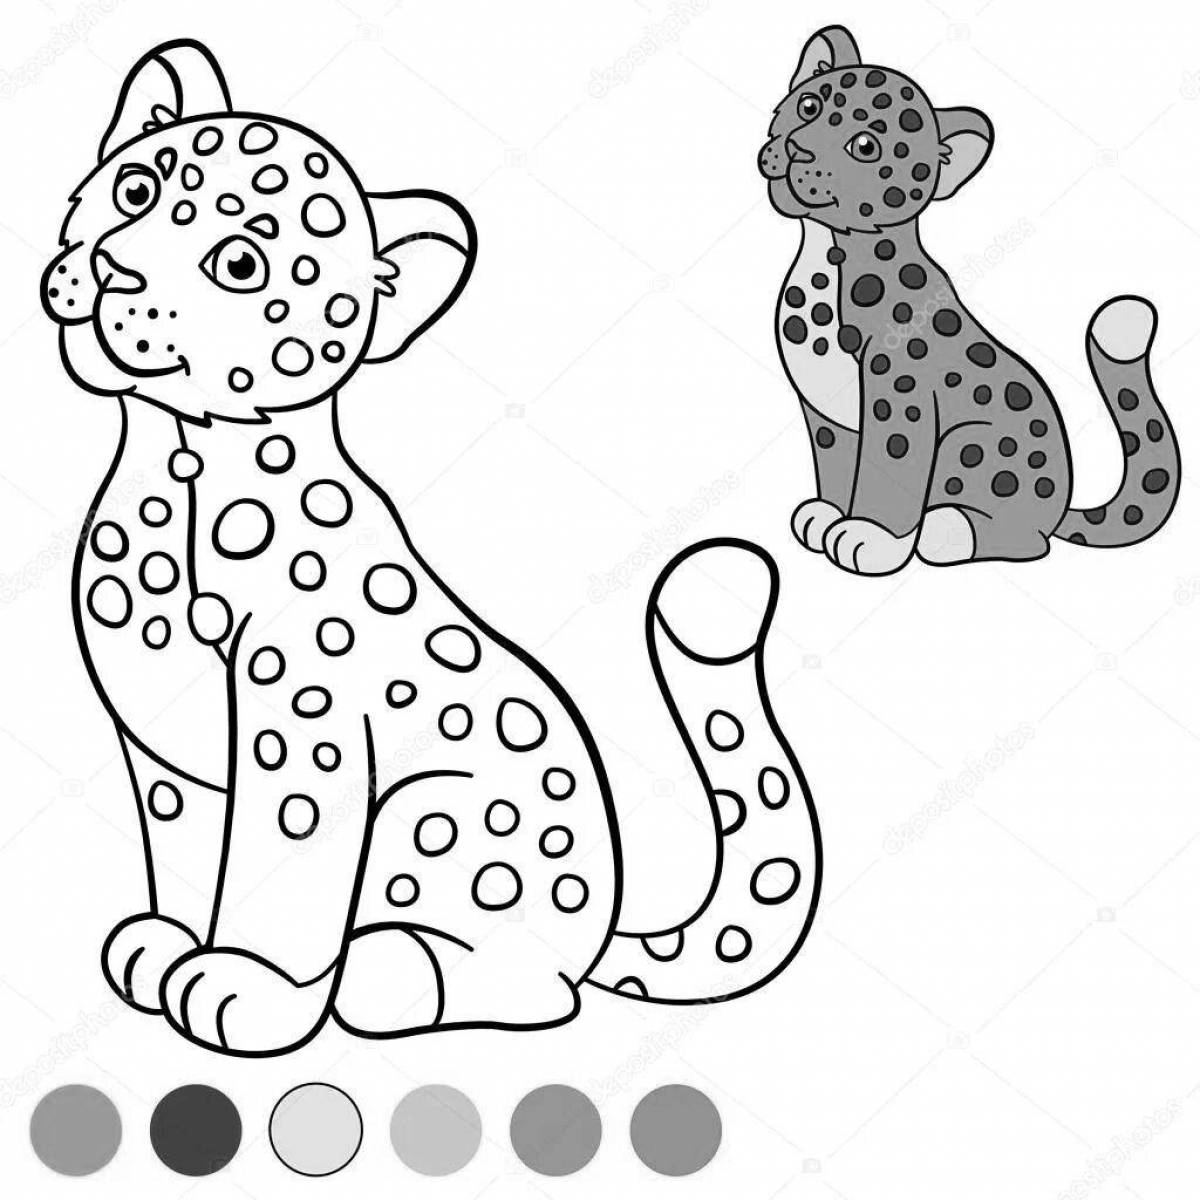 Jaguar coloring book for kids